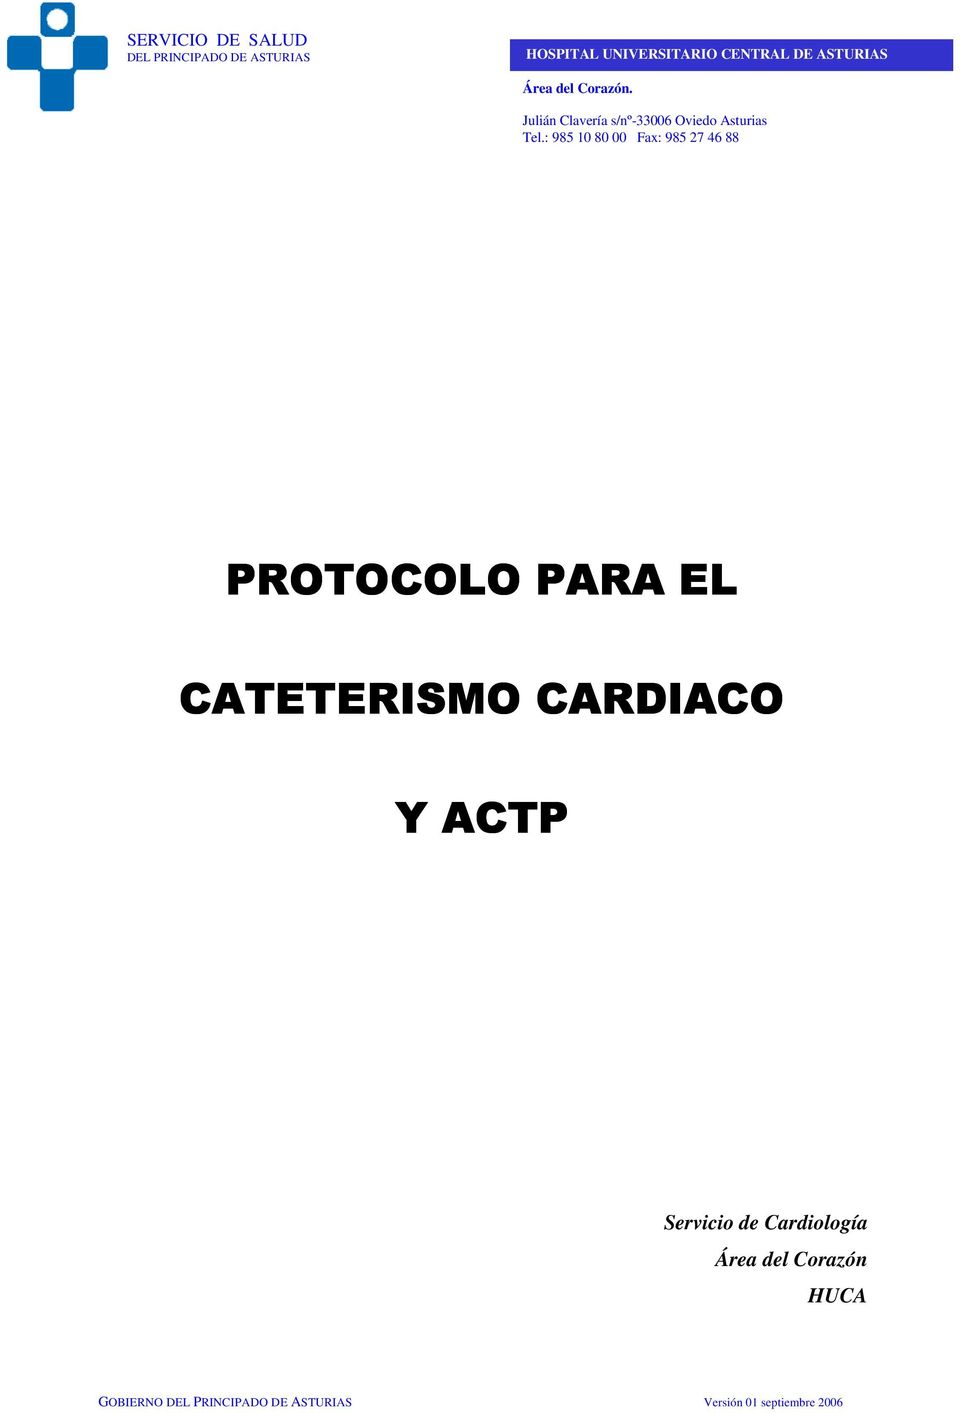 ACTP Servicio de